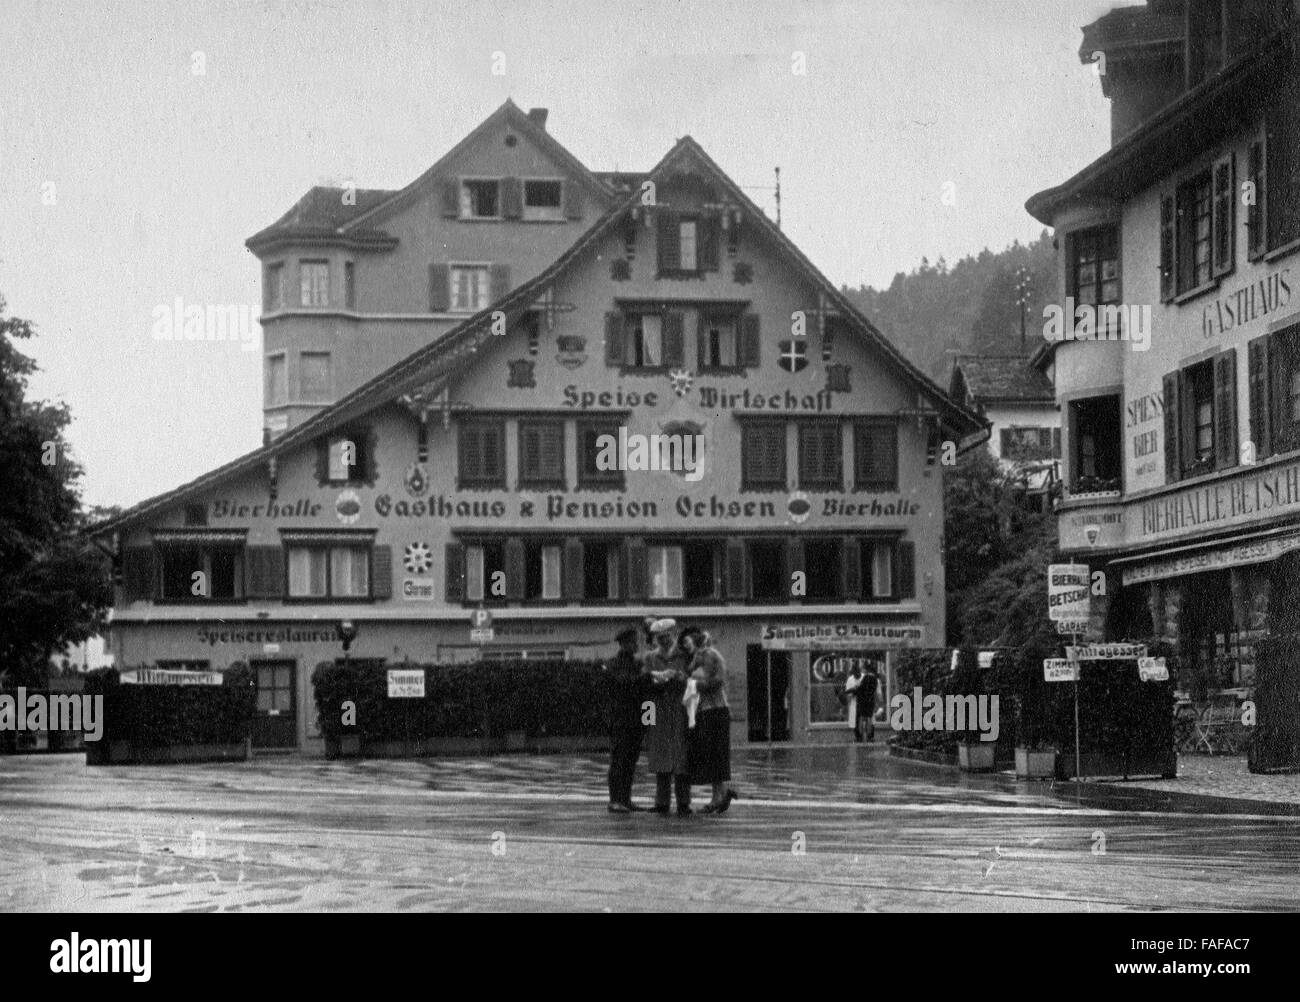 Gasthaus und Pension Ochsen in der Ortschaft Brunnen, Schweiz 1930er Jahre. Hotel and inn 'Ochsen' at the town of Brunnen, Switzerland 1930s. Stock Photo